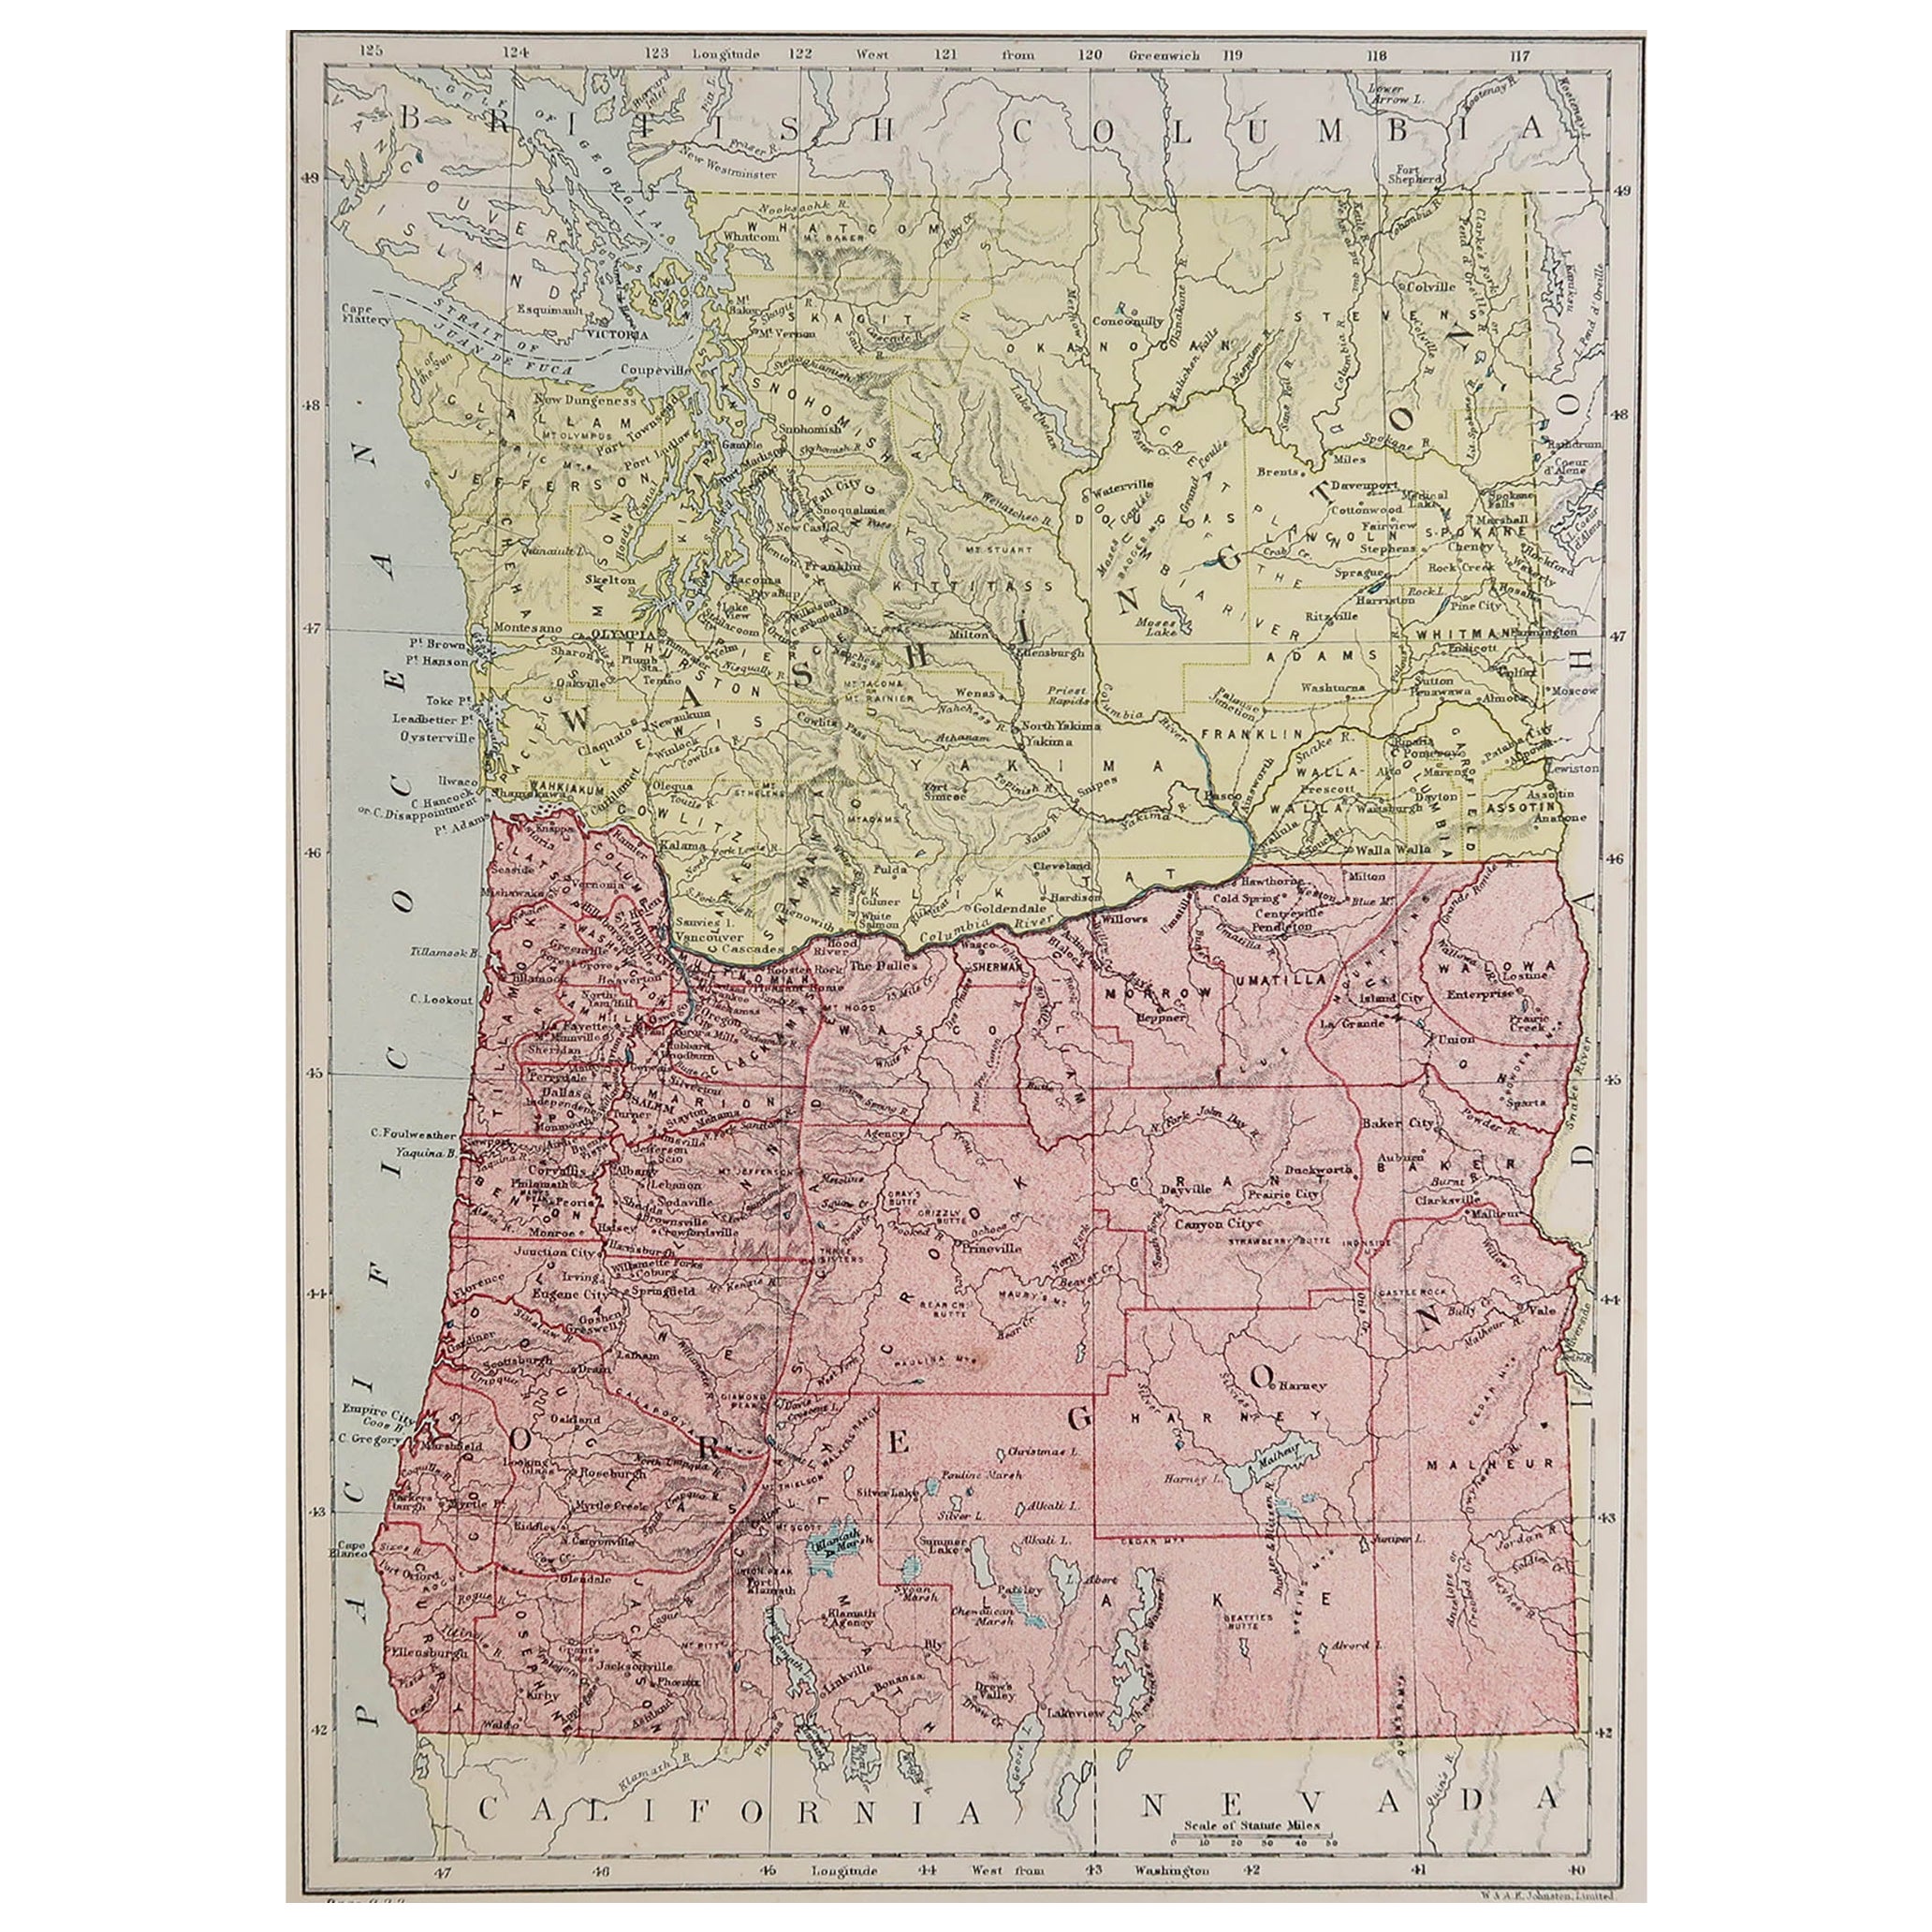 Mapa original antiguo del estado norteamericano de Oregón, 1889